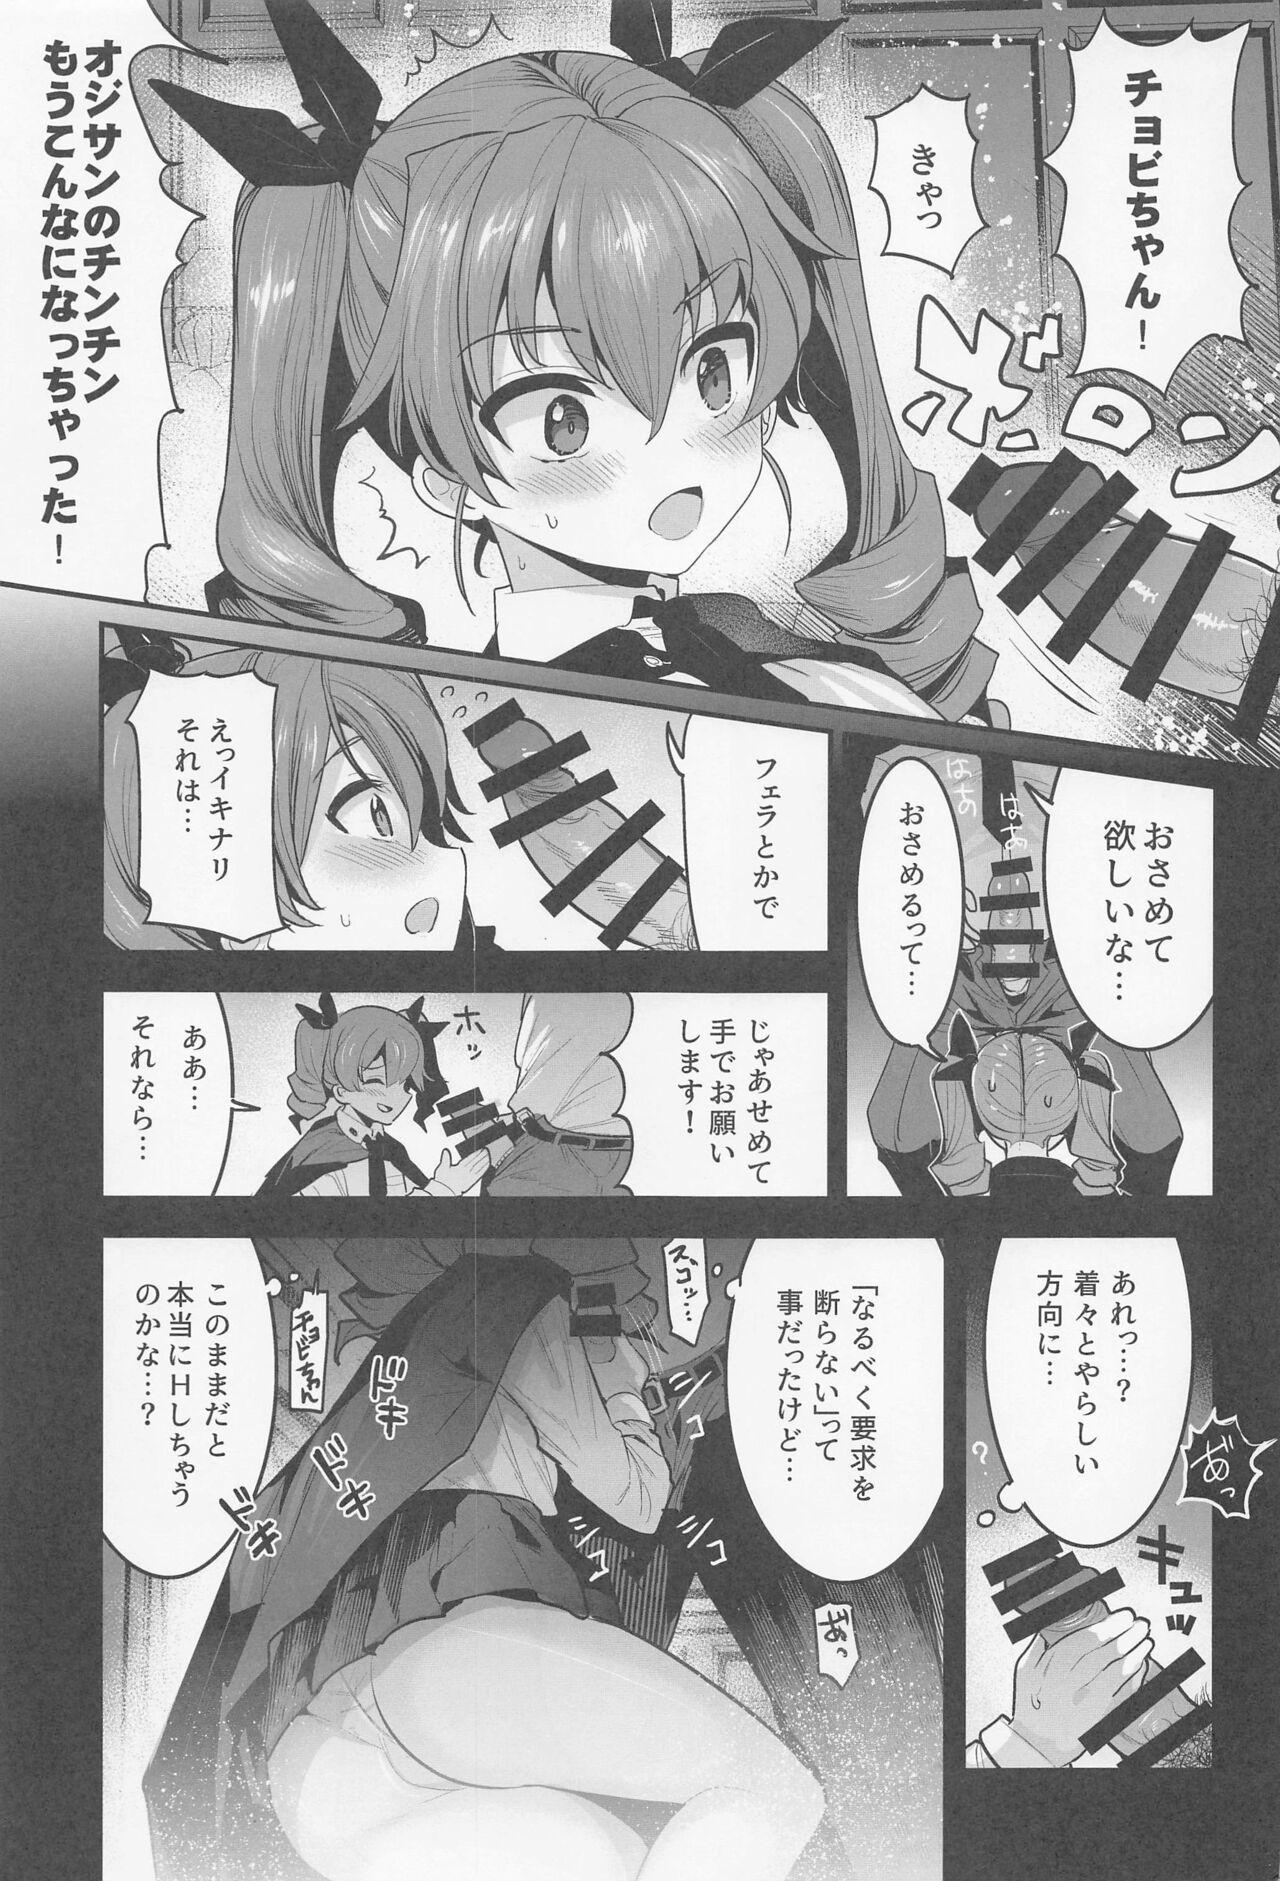 Hand anchobi dogezadeonegaishitaraippatsuyarasetekuremashita - Girls und panzer Free Fuck - Page 6